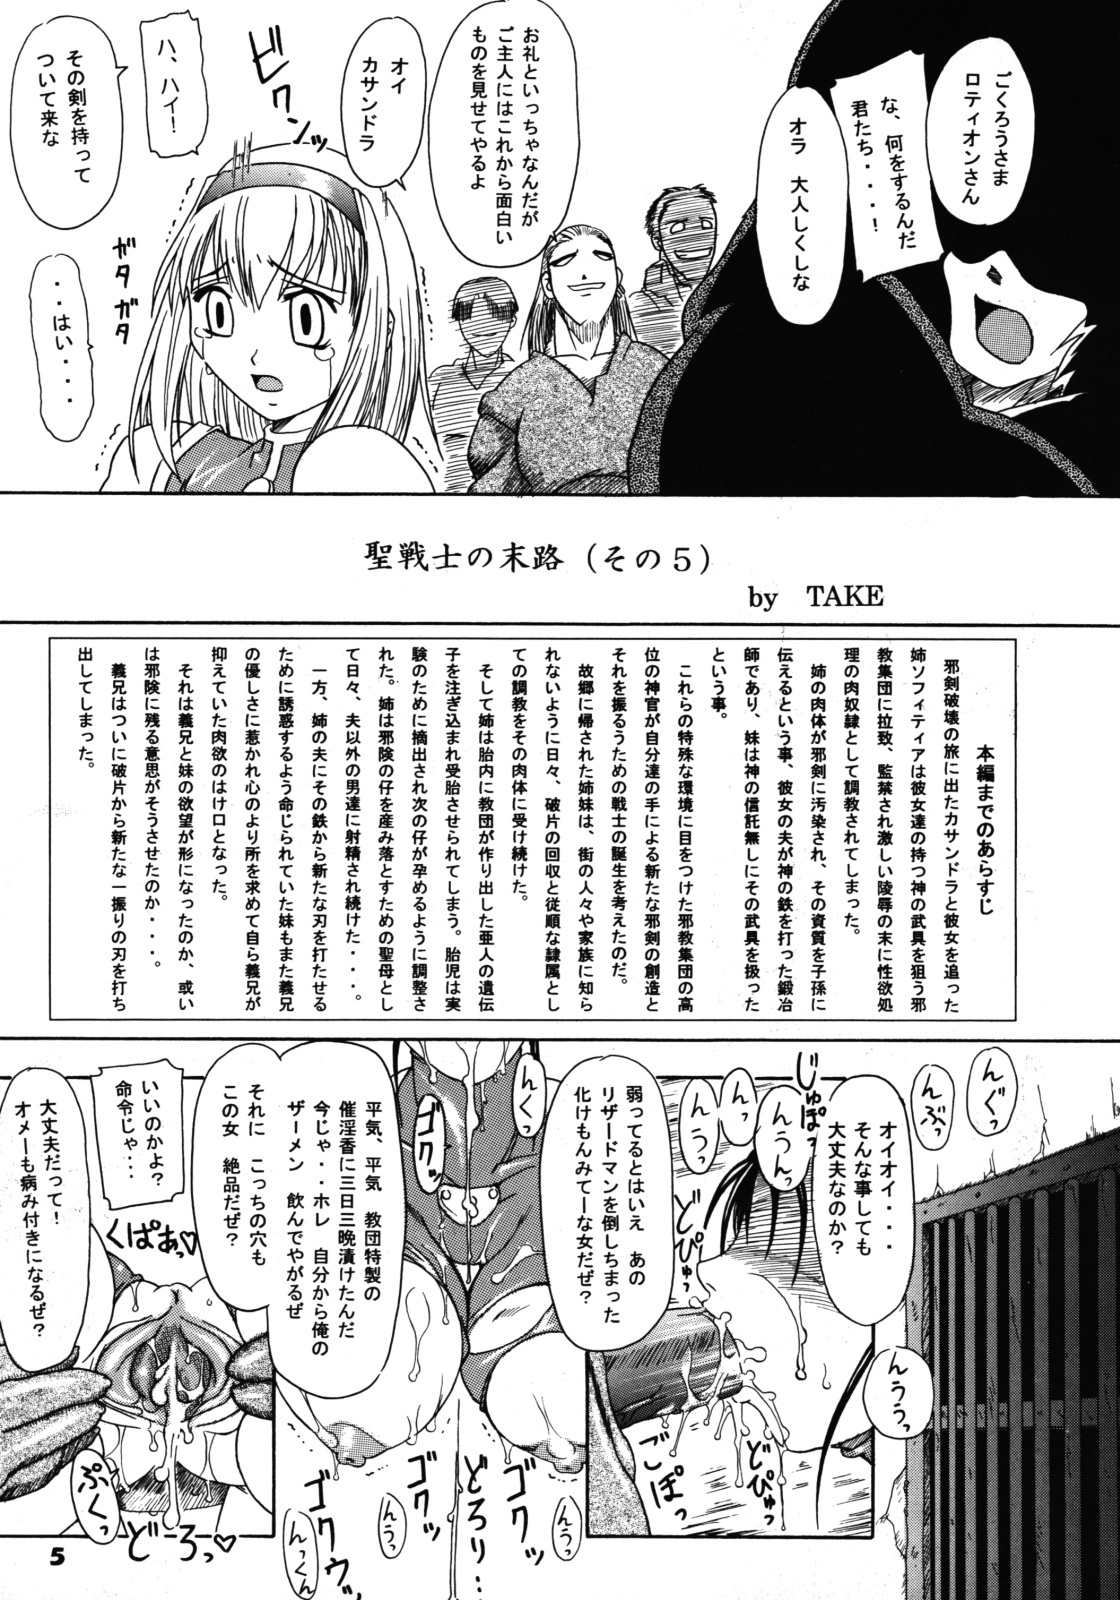 (SC24) [Furuya (Take)] Kakugee Zanmai 4 (Darkstalkers, SoulCalibur) page 4 full